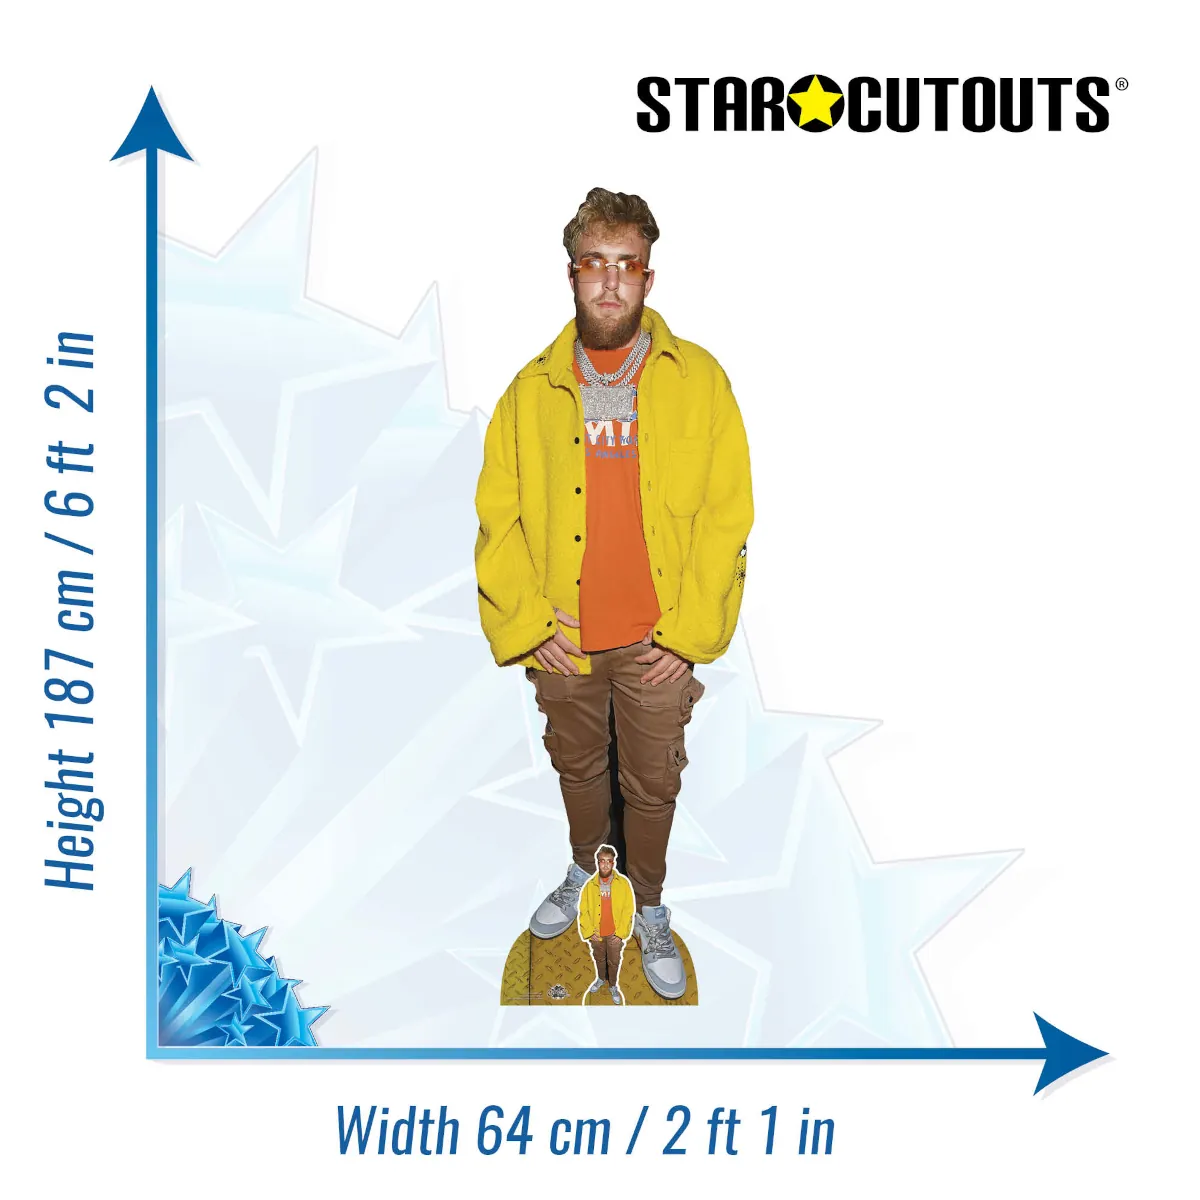 CS1069 Jake Paul 'Yellow Jacket' (American Media Personality) Lifesize + Mini Cardboard Cutout Standee Size